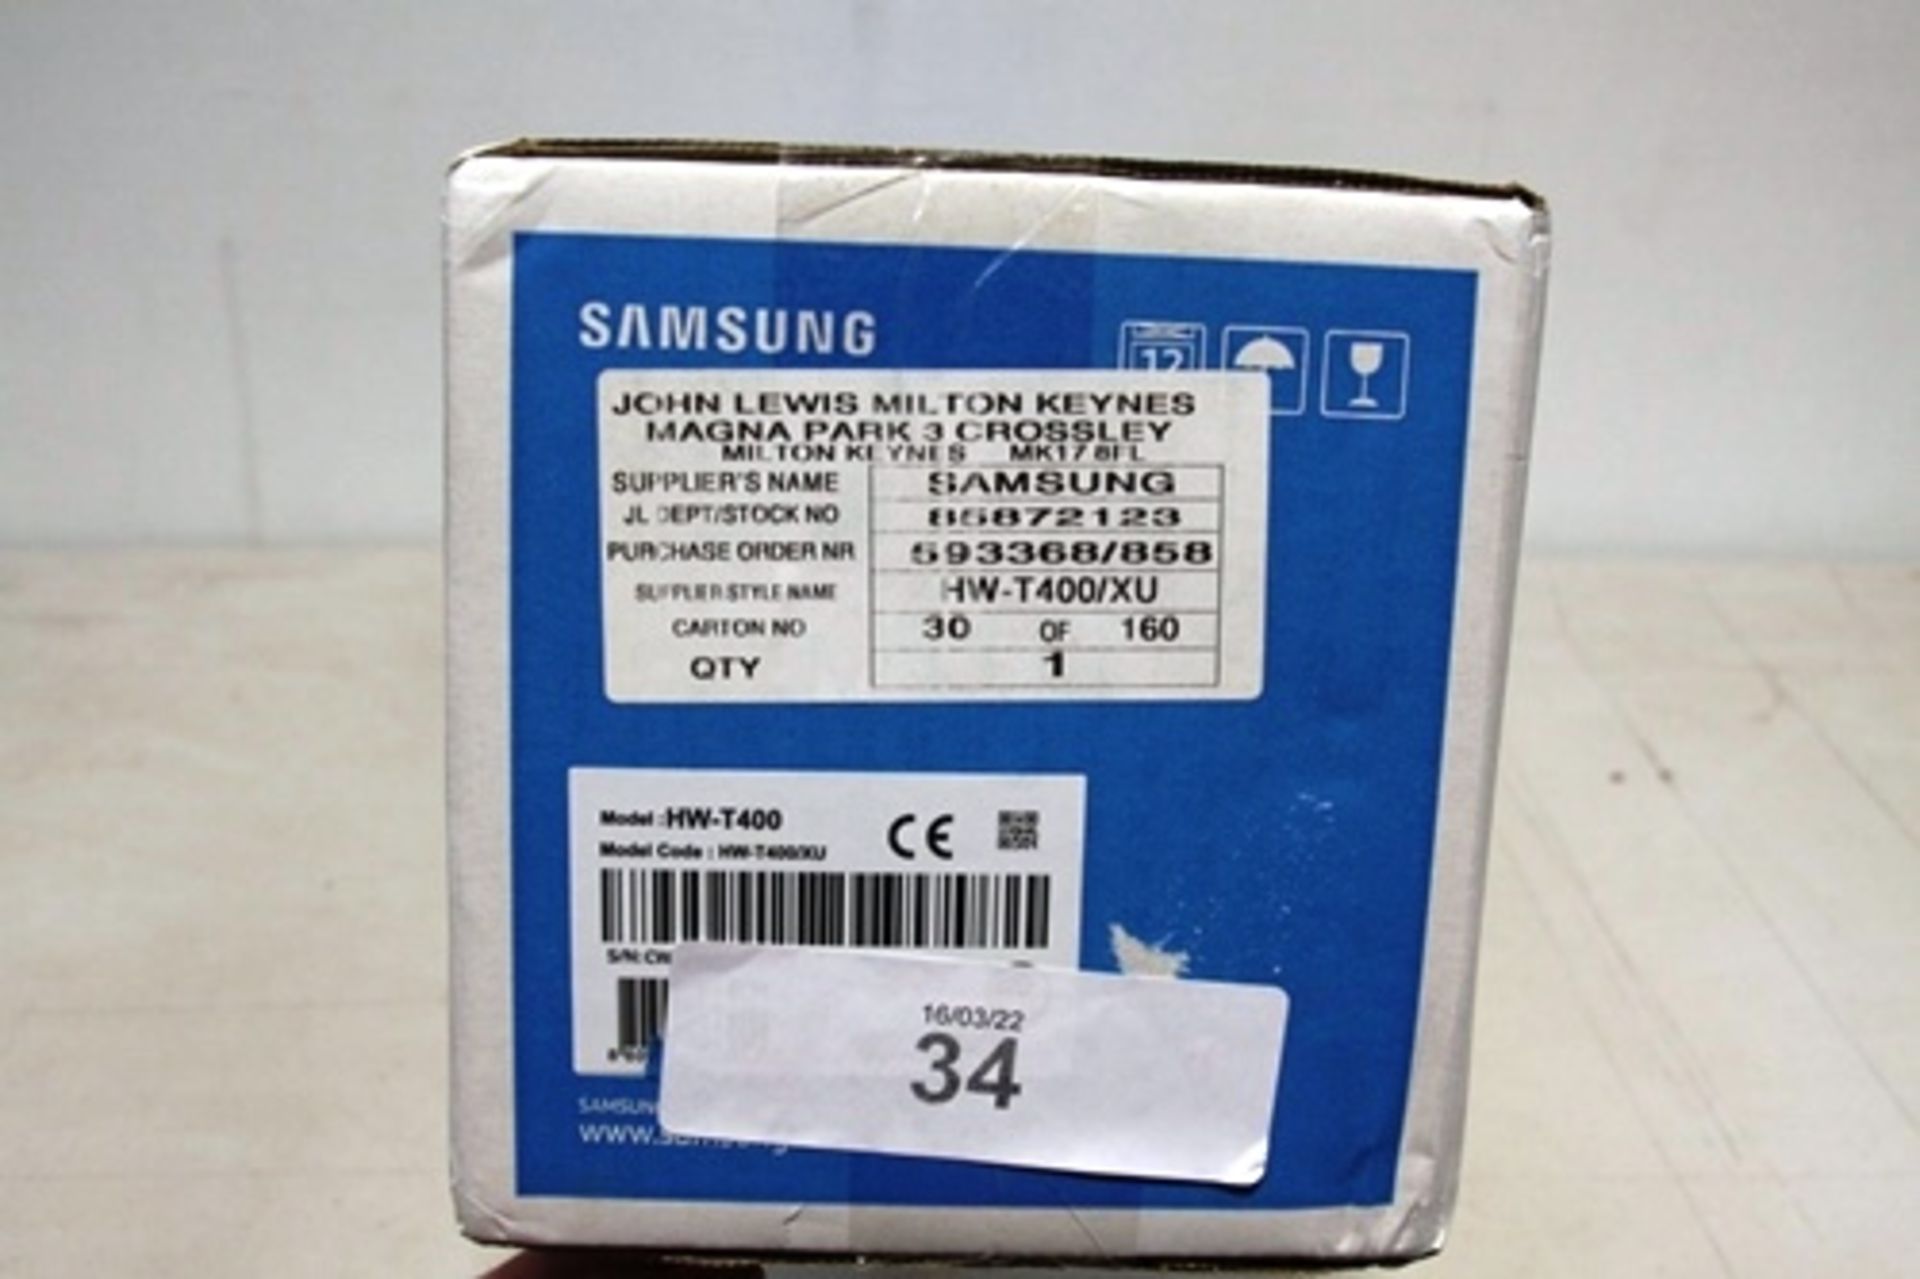 1 x Samsung soundbar, model HW-T400 - New (ES8) - Image 2 of 2